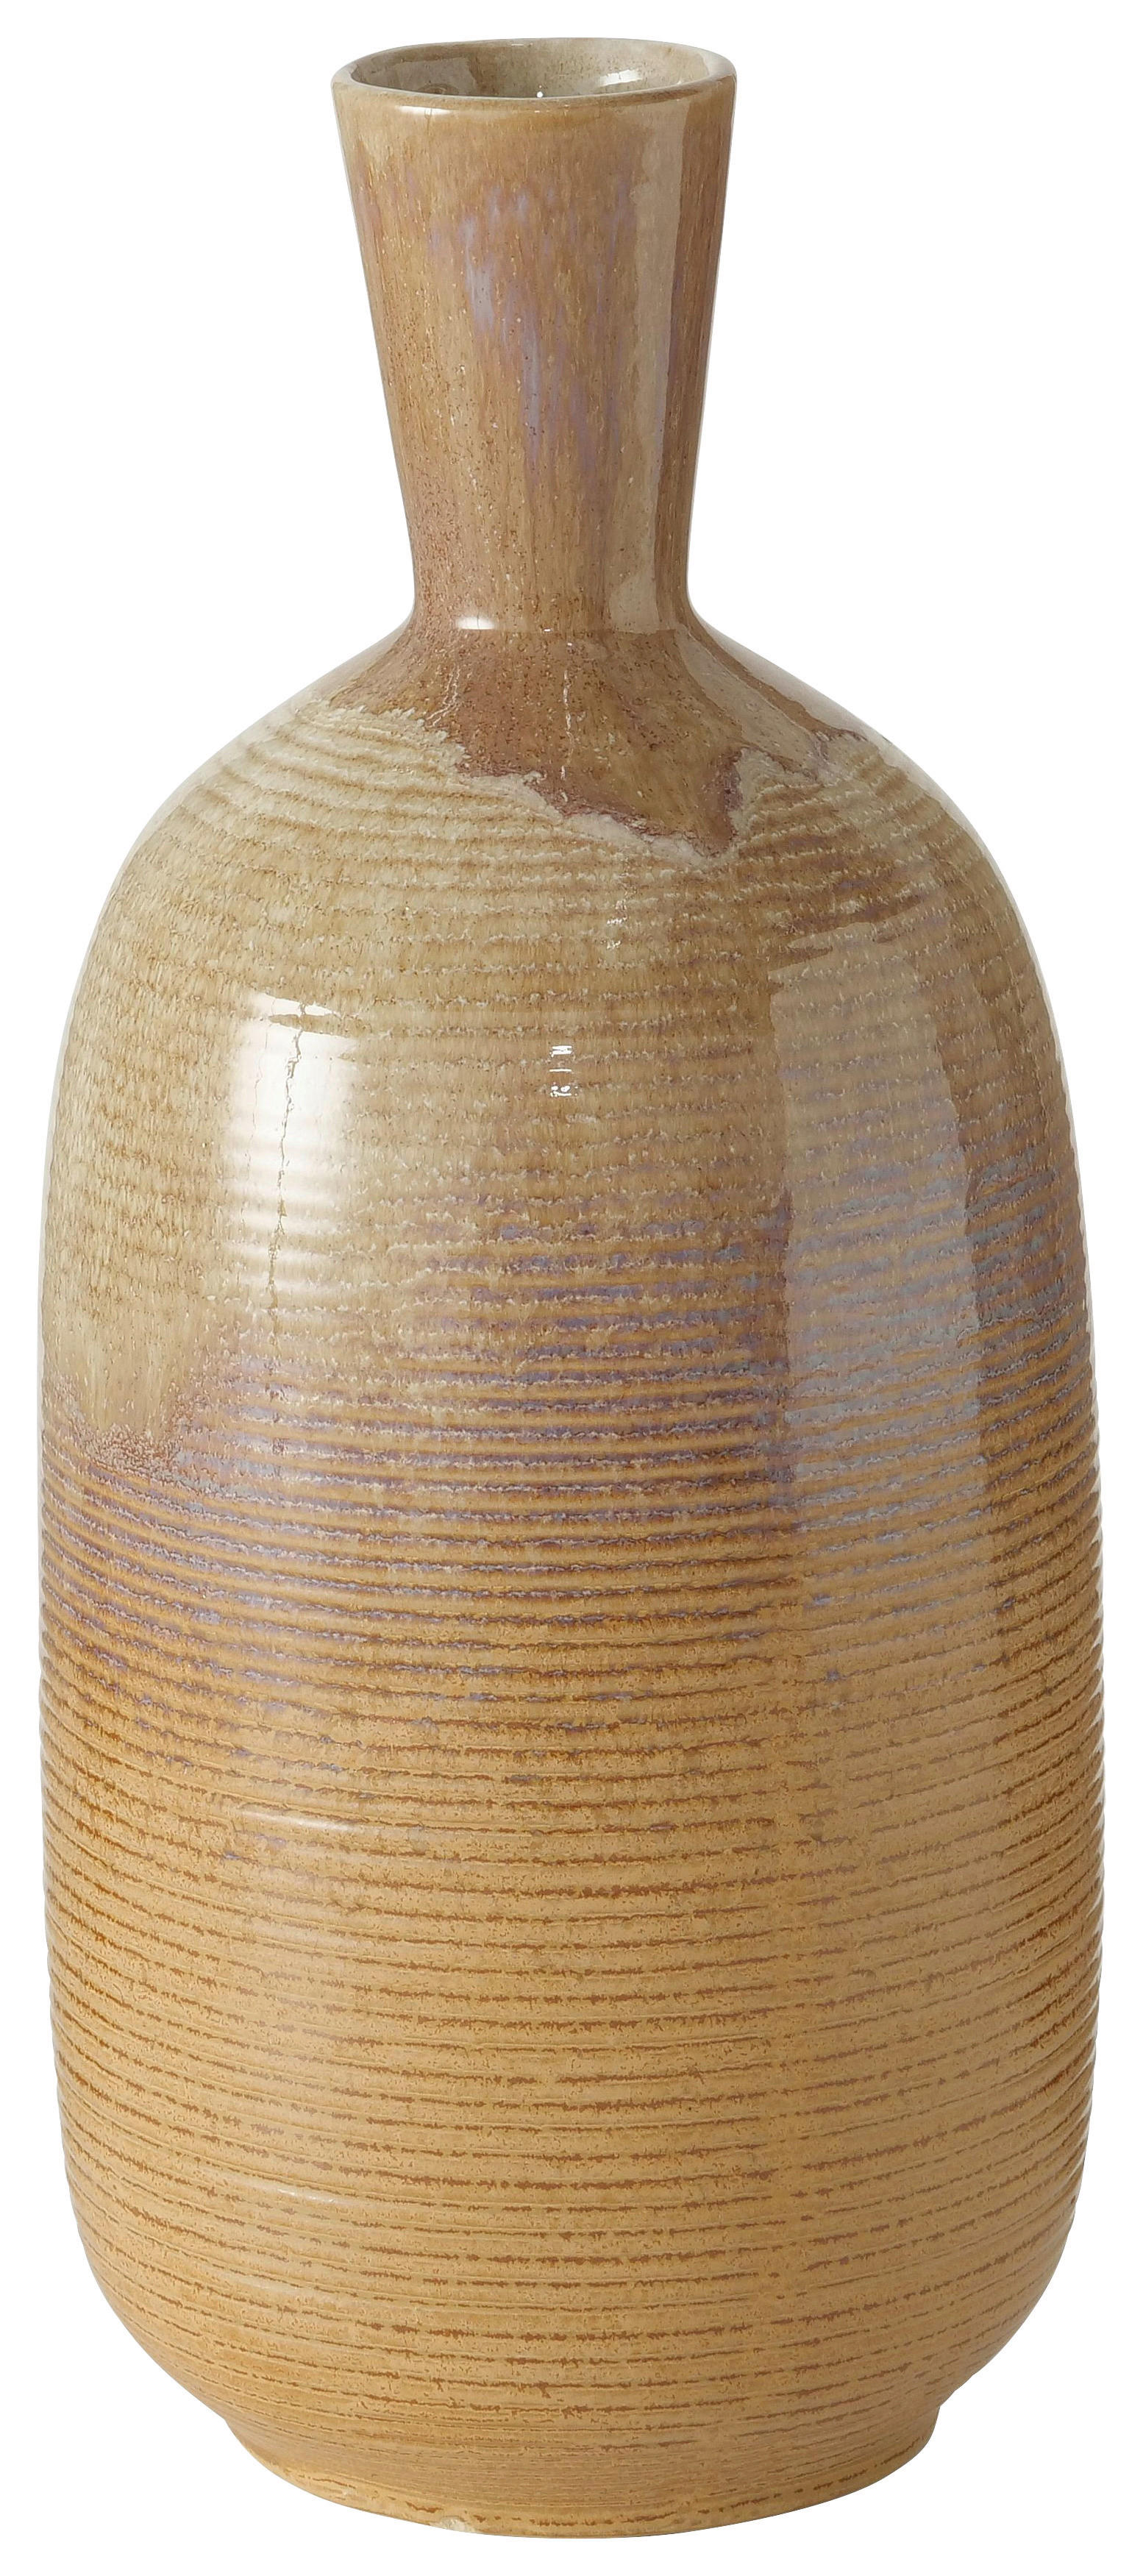 VASE 36 cm  - Beige/Braun, Natur, Keramik (15/36cm)